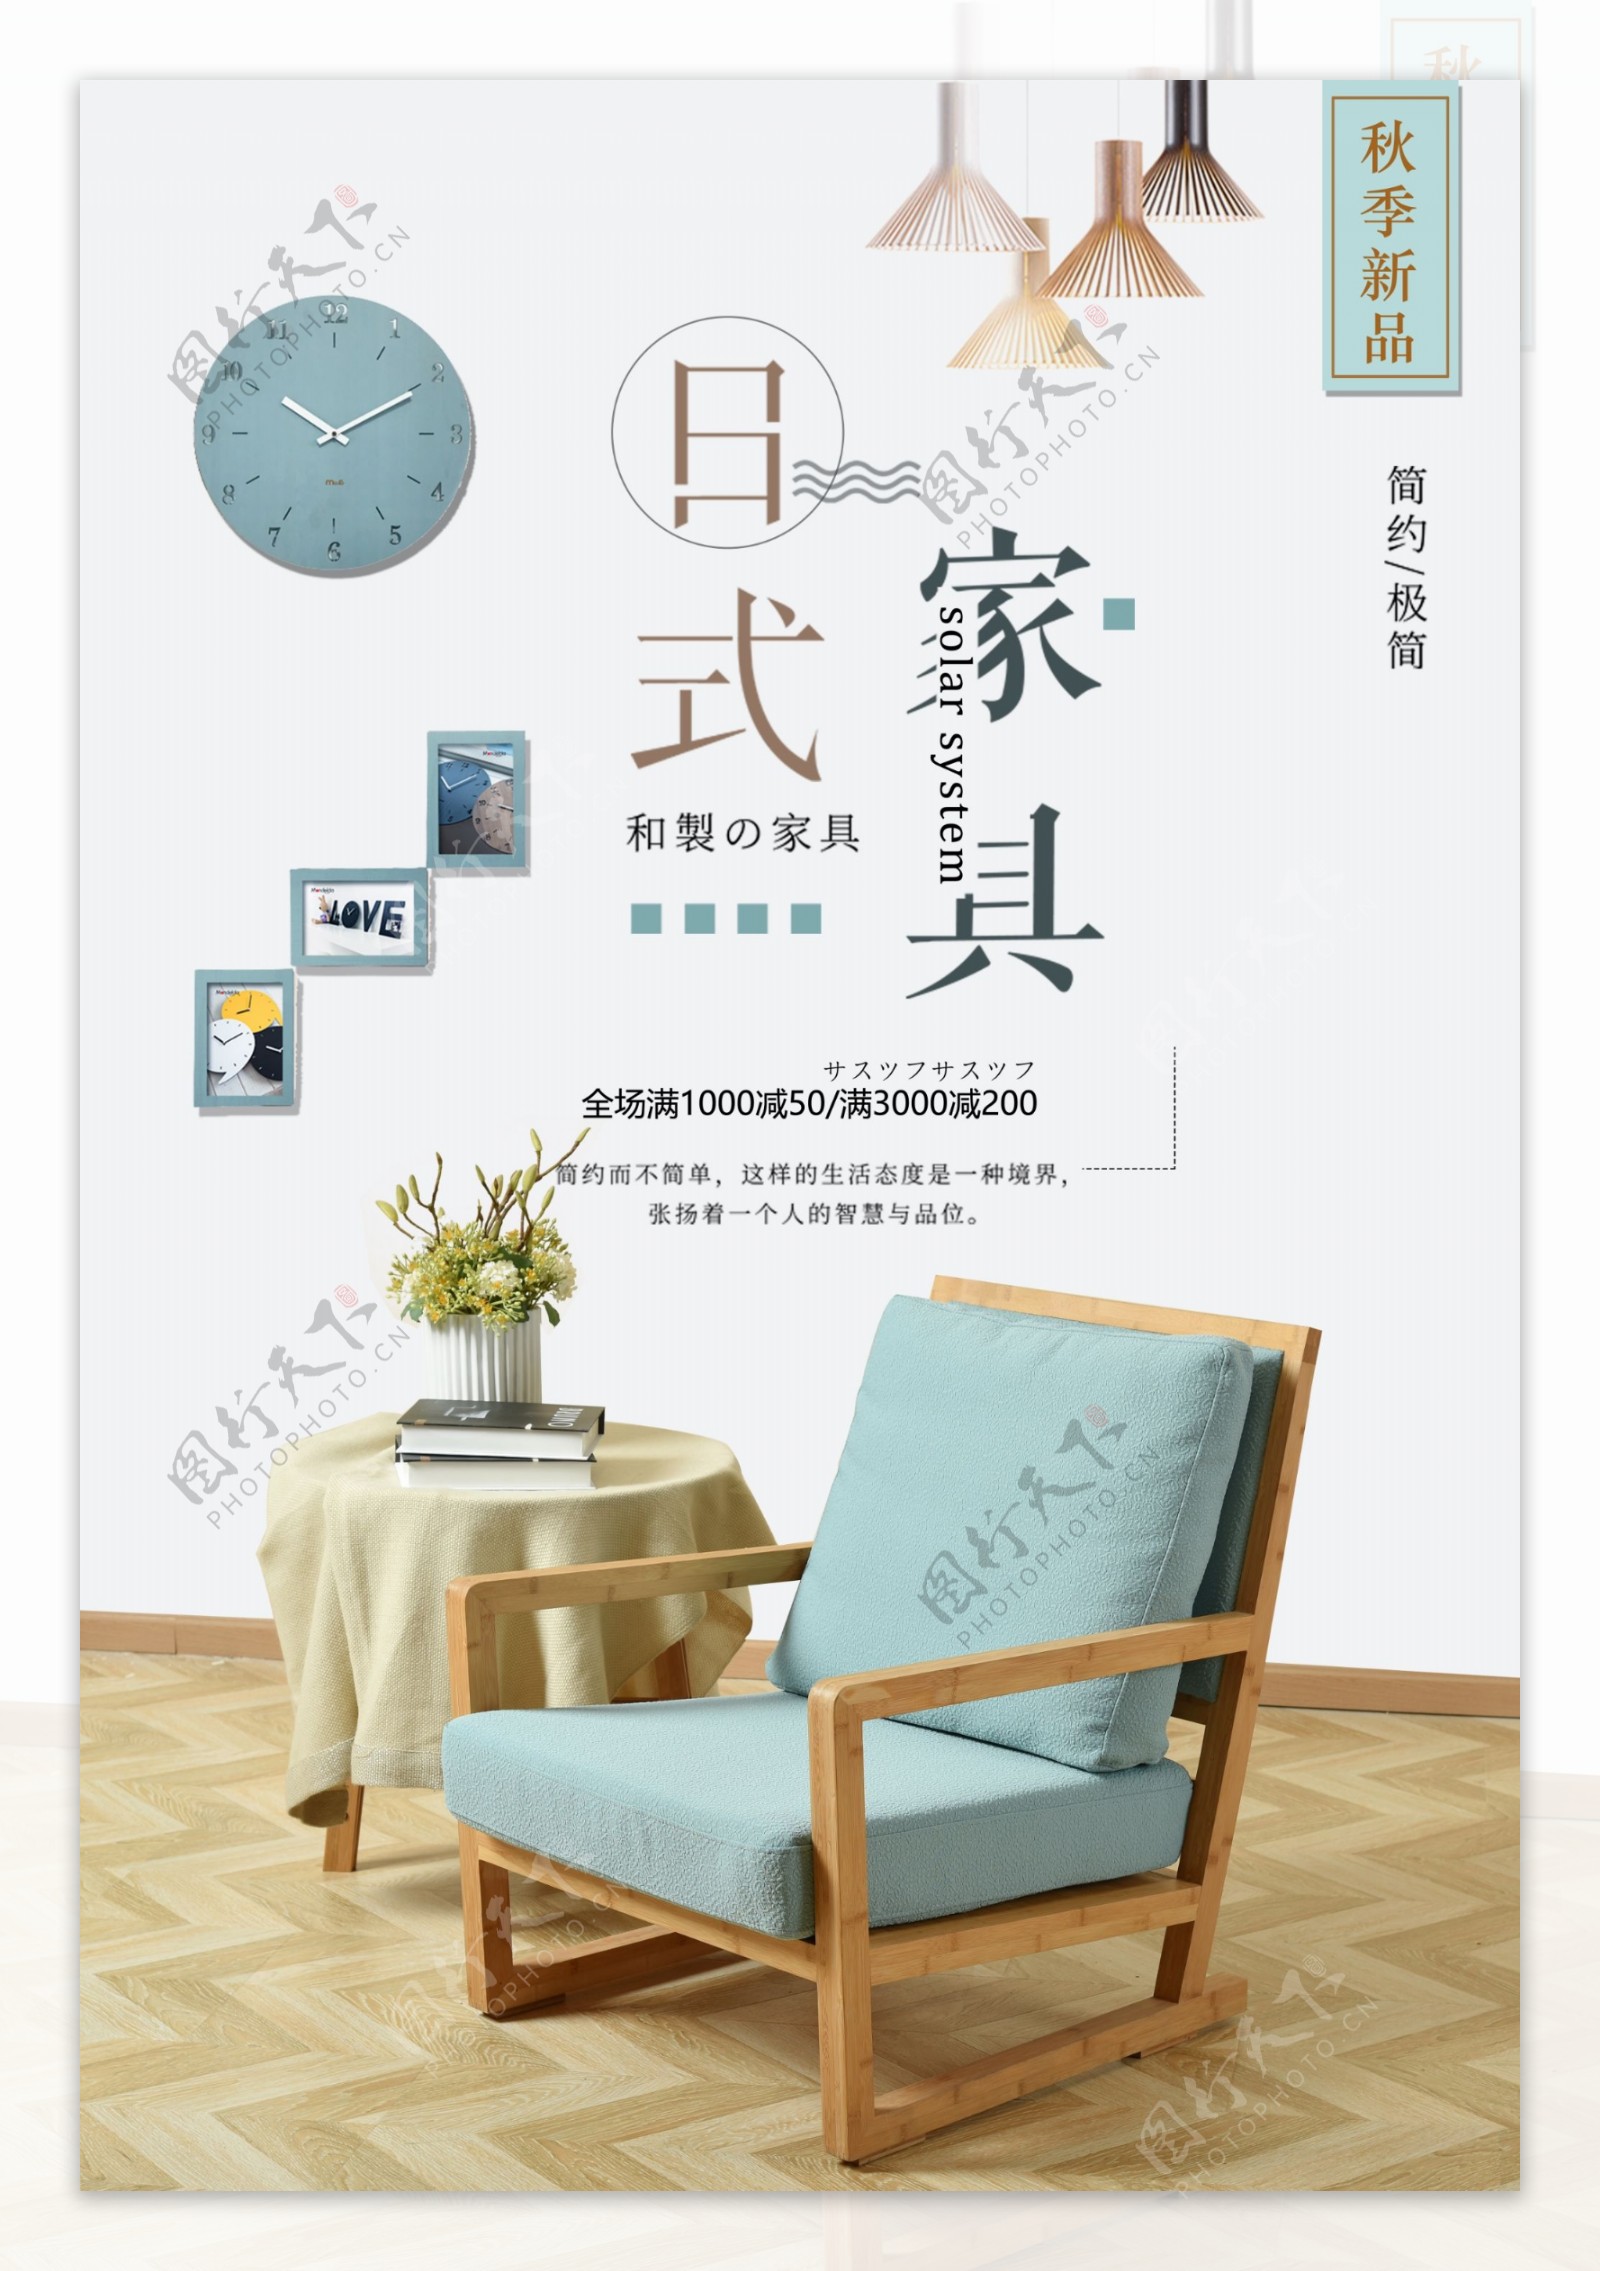 简约日式家具促销海报设计